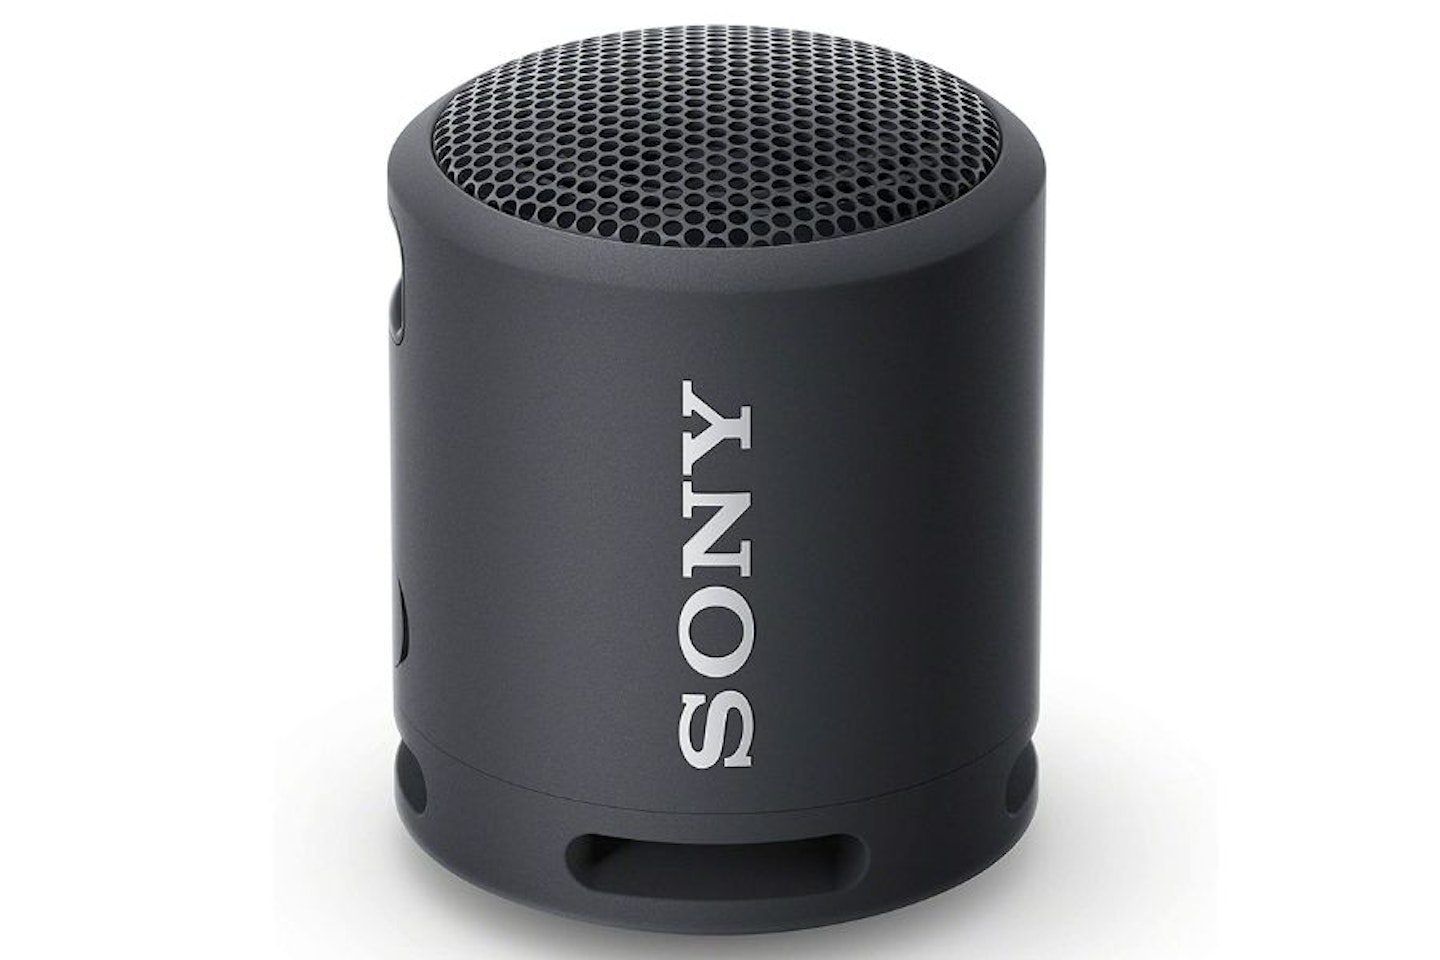 Sony SRS-XB13 